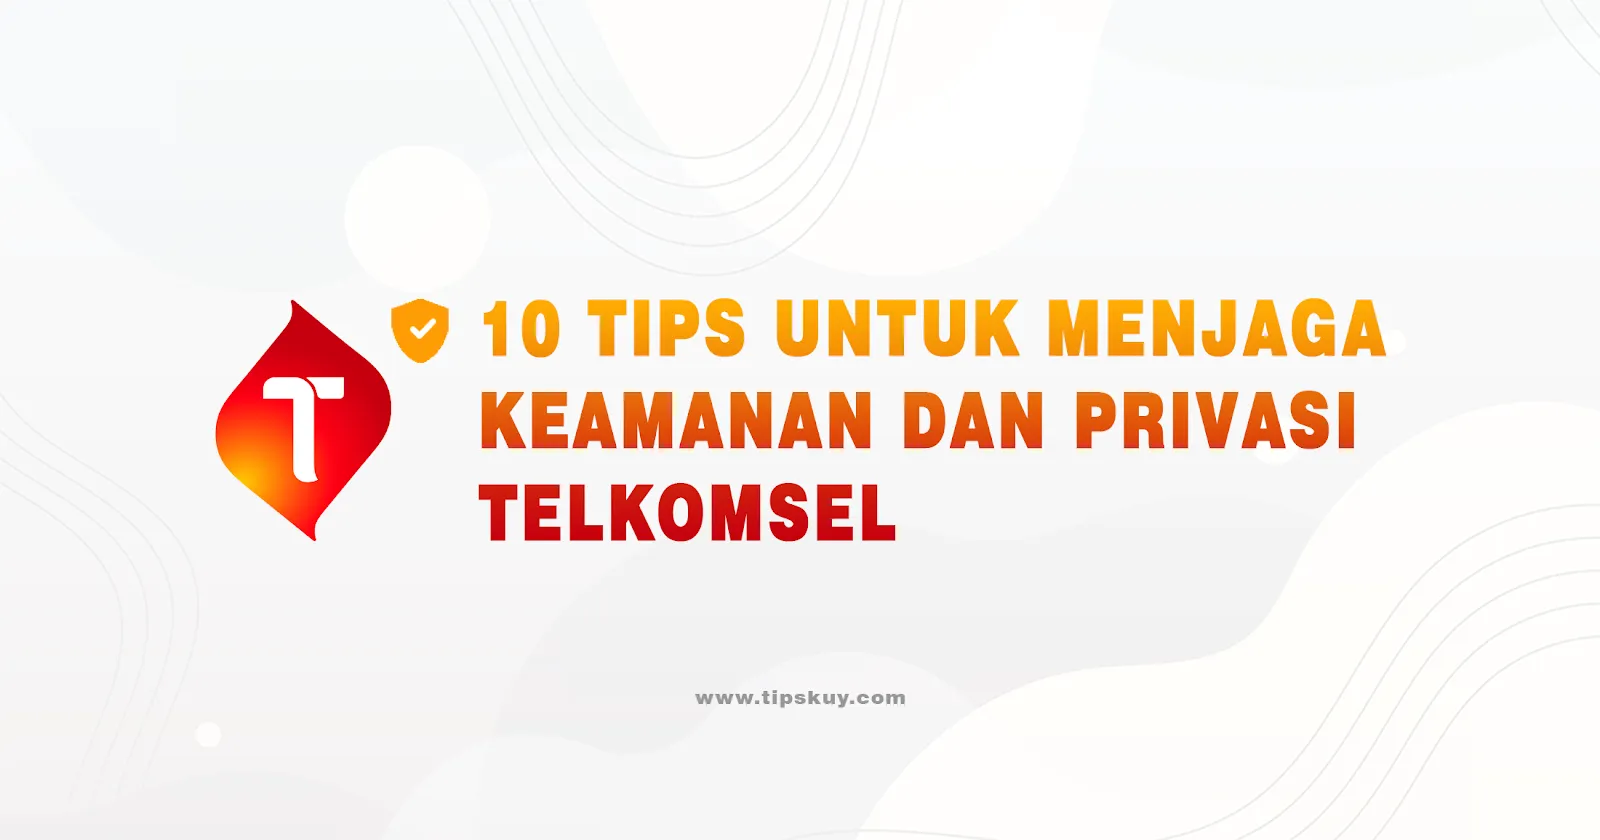 10 Tips untuk Menjaga Keamanan dan Privasi saat Menggunakan Telkomsel